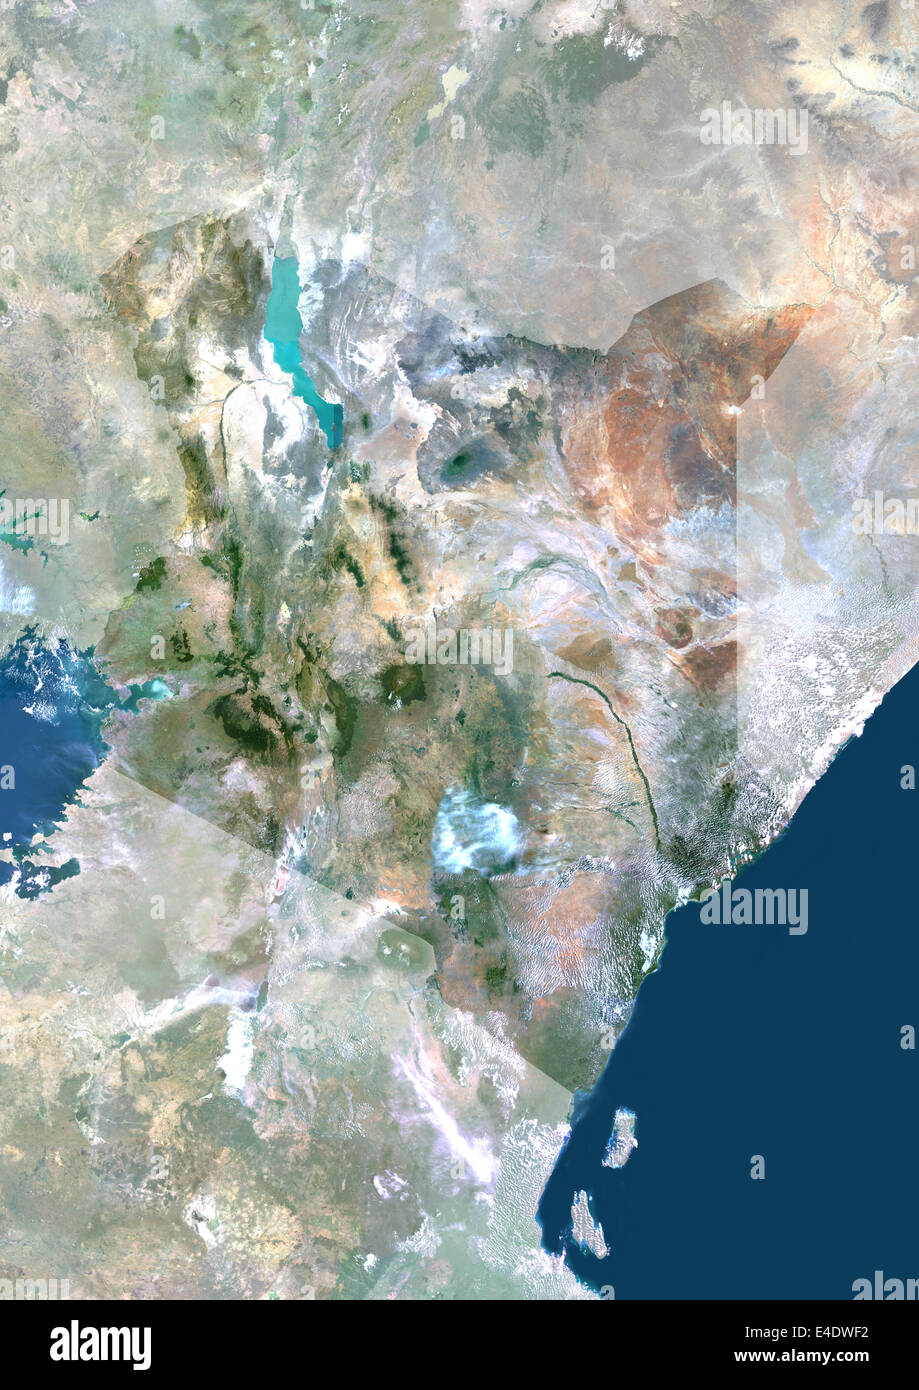 Kenia, Afrika, Echtfarben-Satellitenbild mit Maske. Satellitenansicht von Kenia (mit Maske). Dieses Bild wurde aus Daten Acq zusammengestellt. Stockfoto